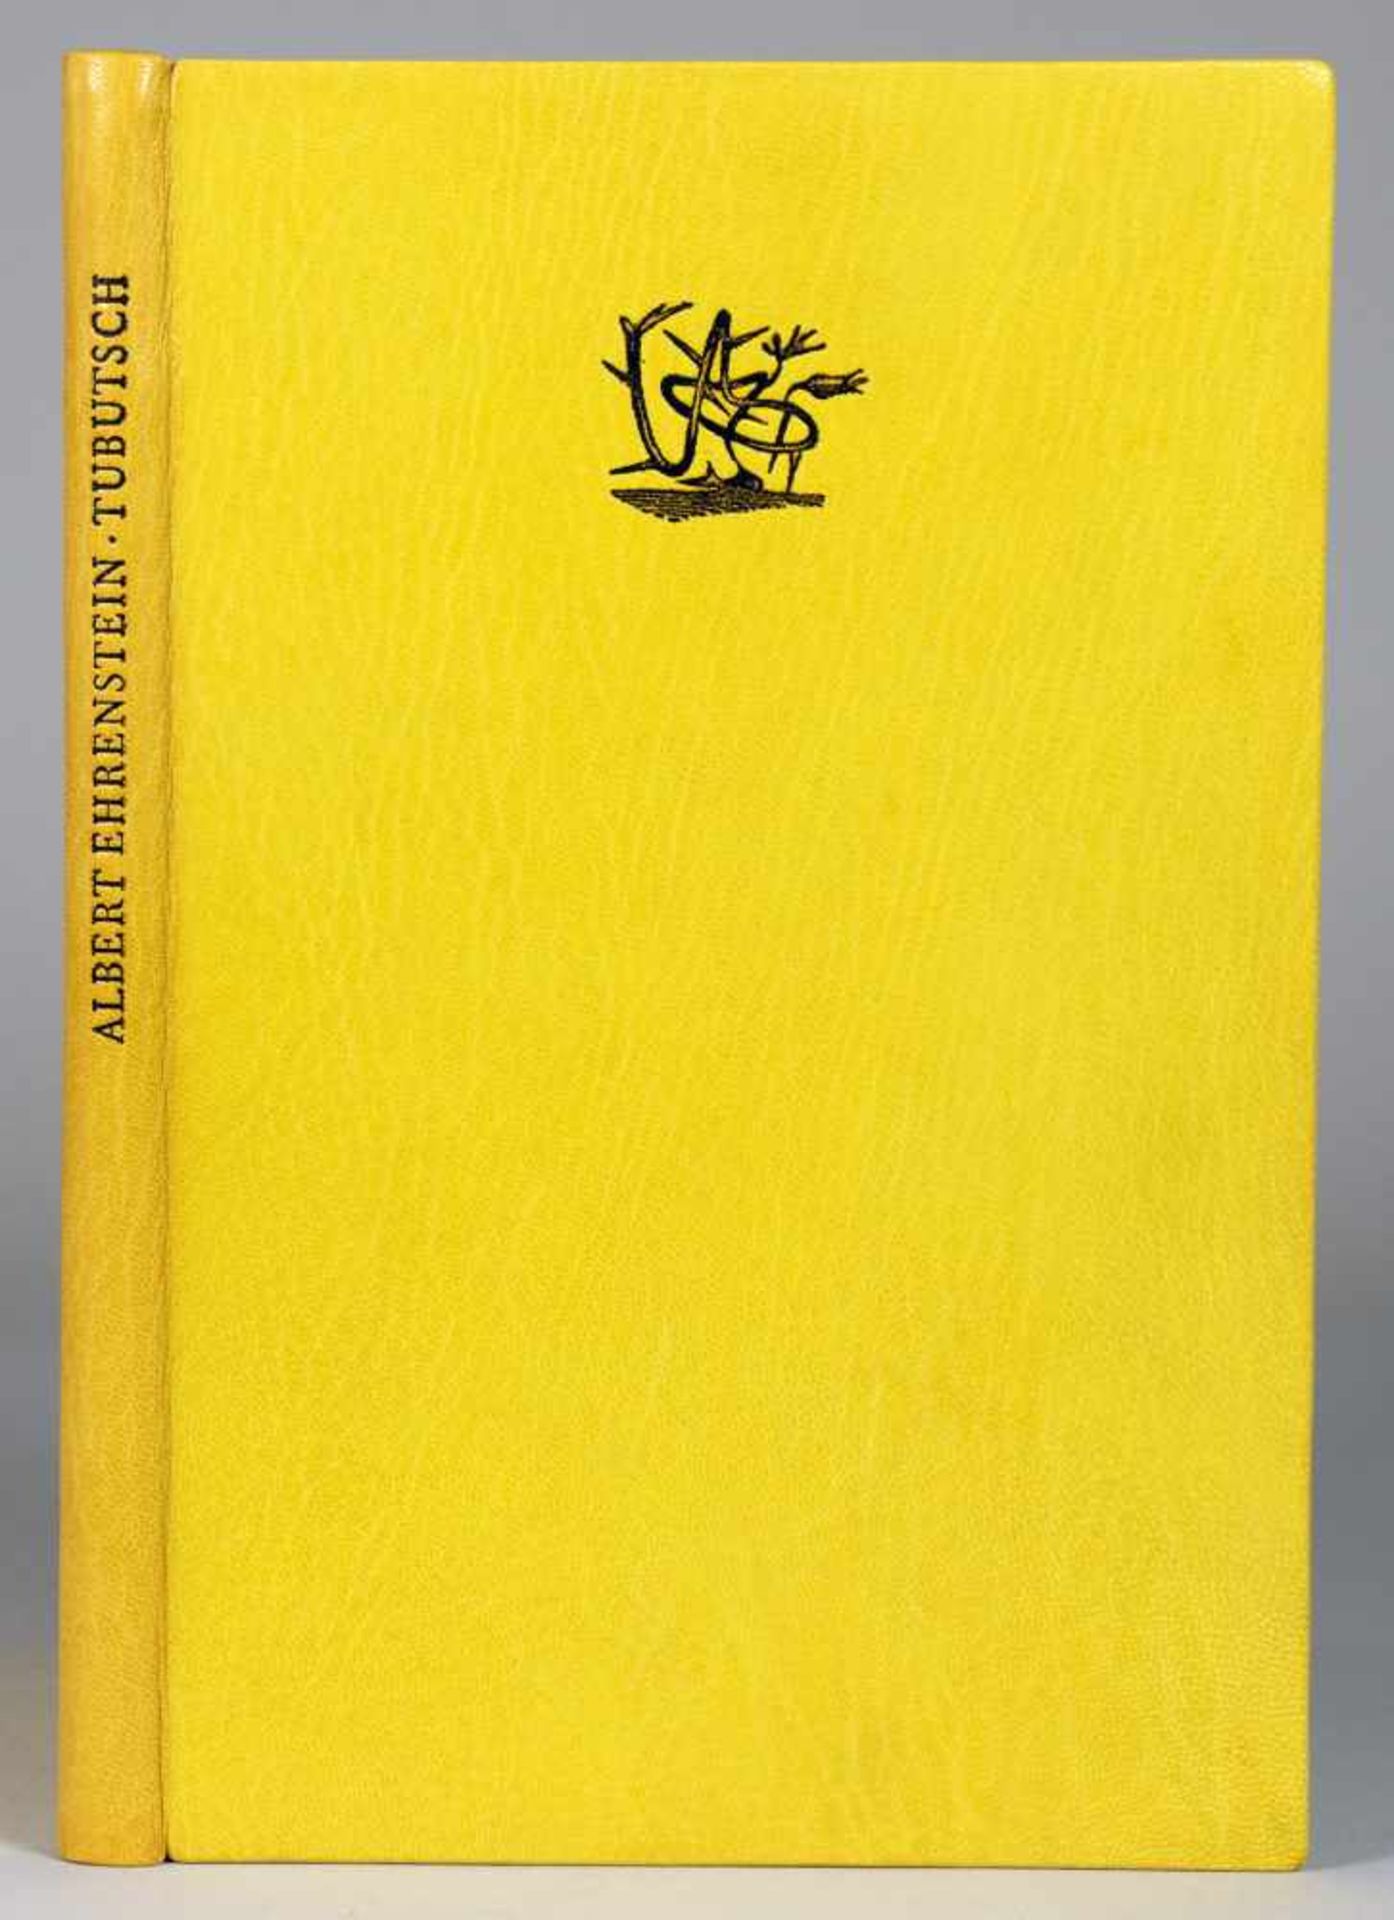 The Bear Press - Albert Ehrenstein. Tubutsch. Zweifarbige Acrylstiche von Karl-Georg Hirsch.